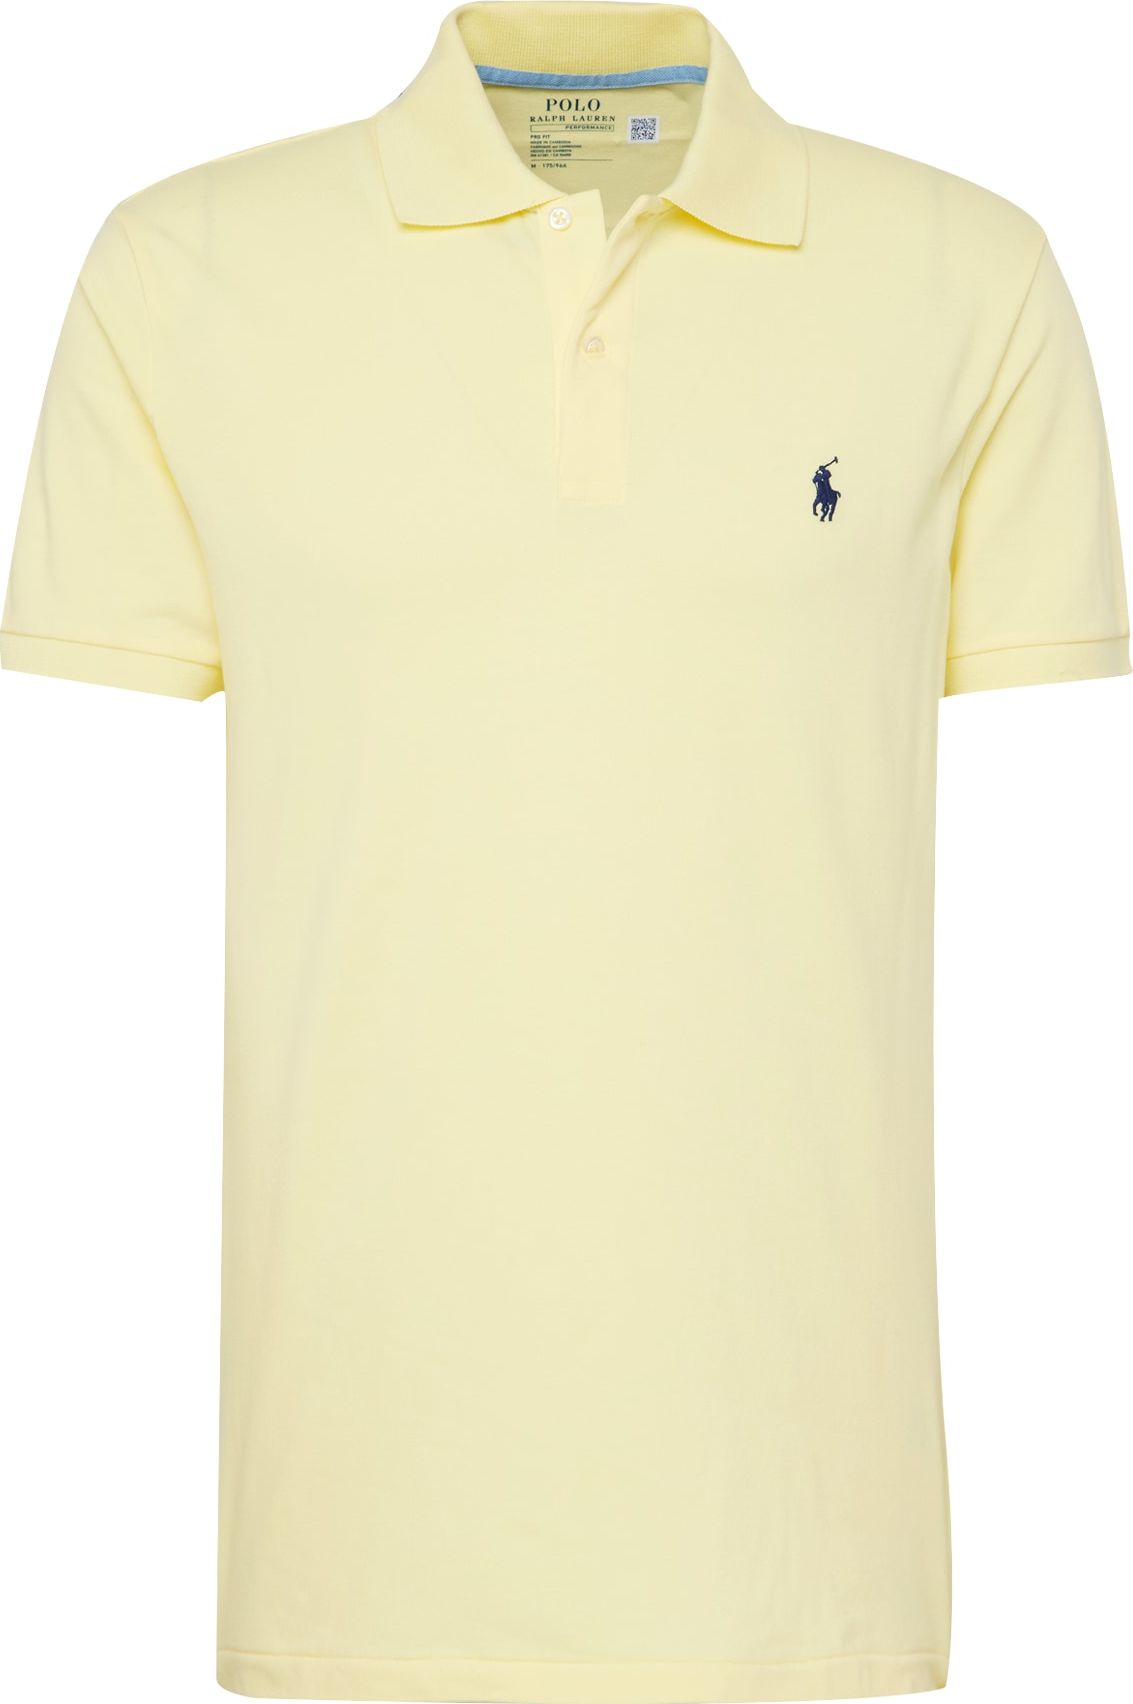 Tričko Polo Ralph Lauren marine modrá / světle žlutá